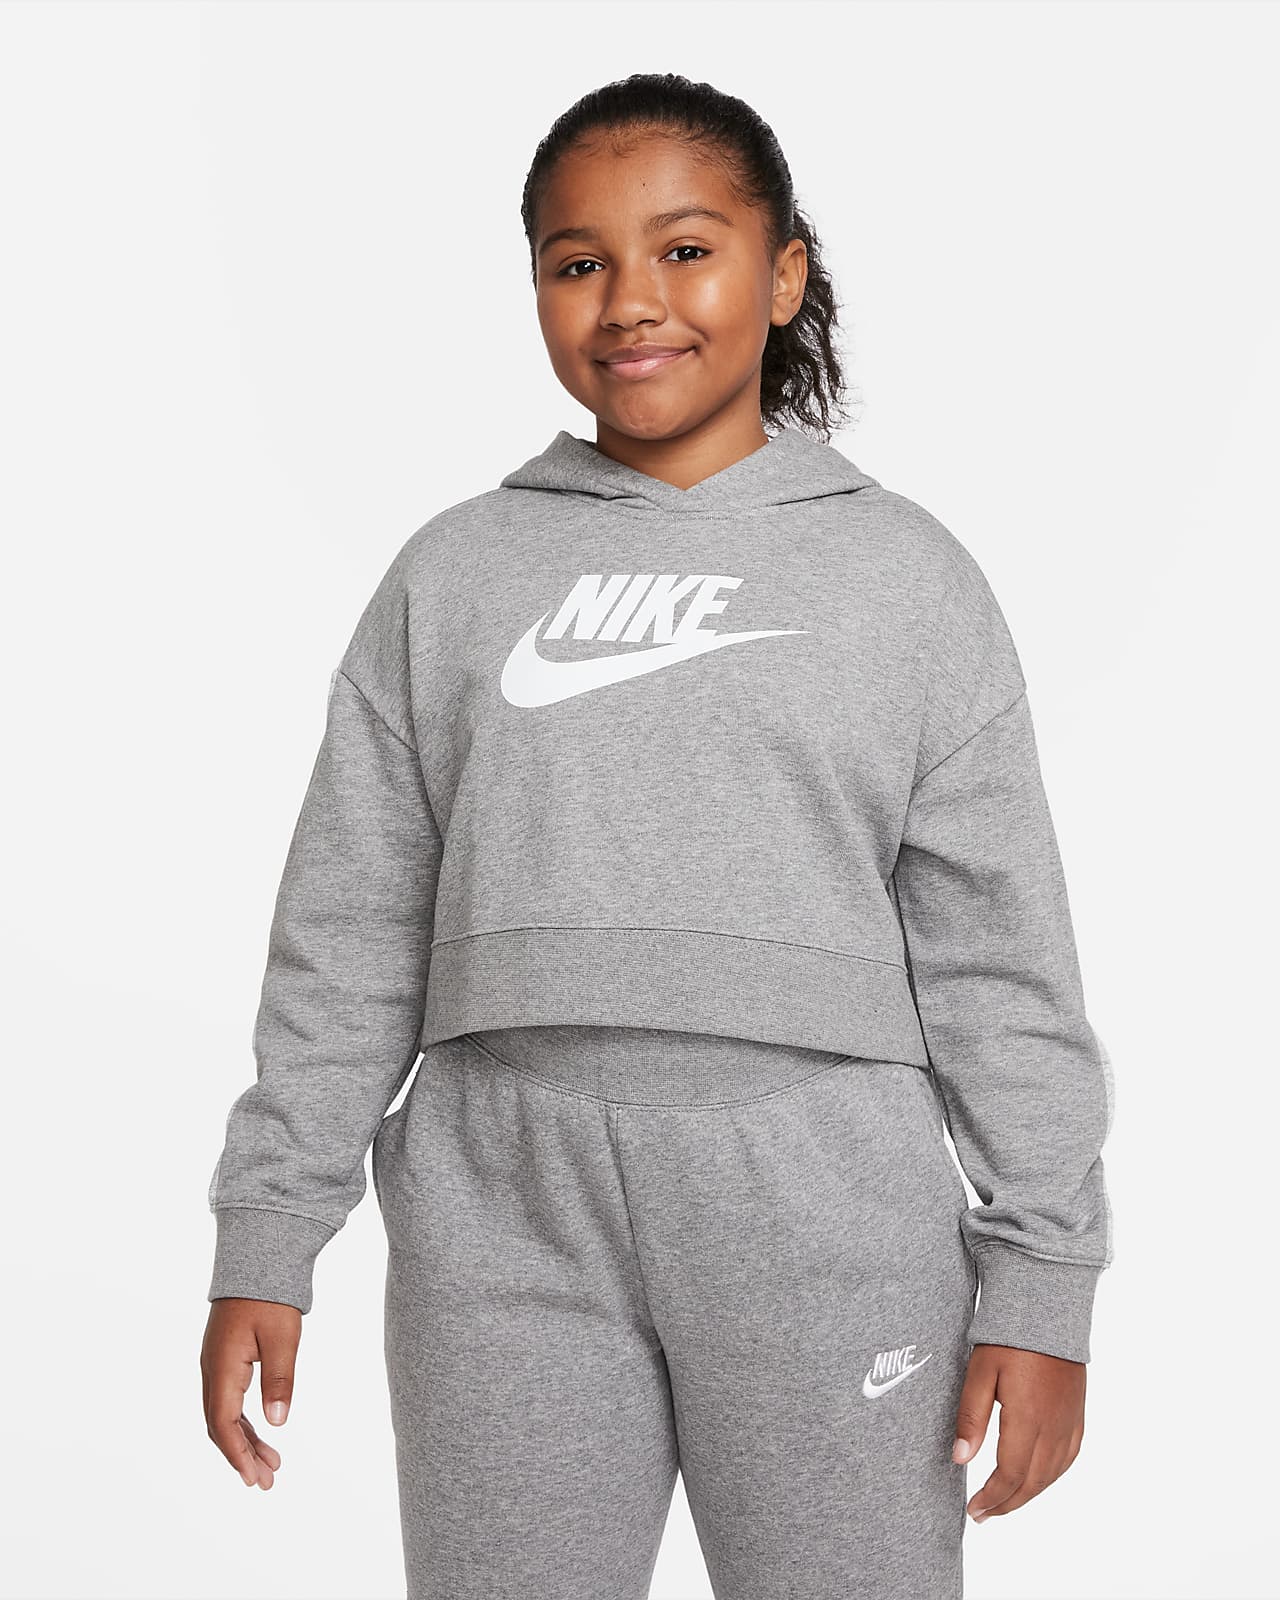 Nike Sportswear Club Crop-Hoodie aus French Terry für ältere Kinder (Mädchen) (erweiterte Größe)